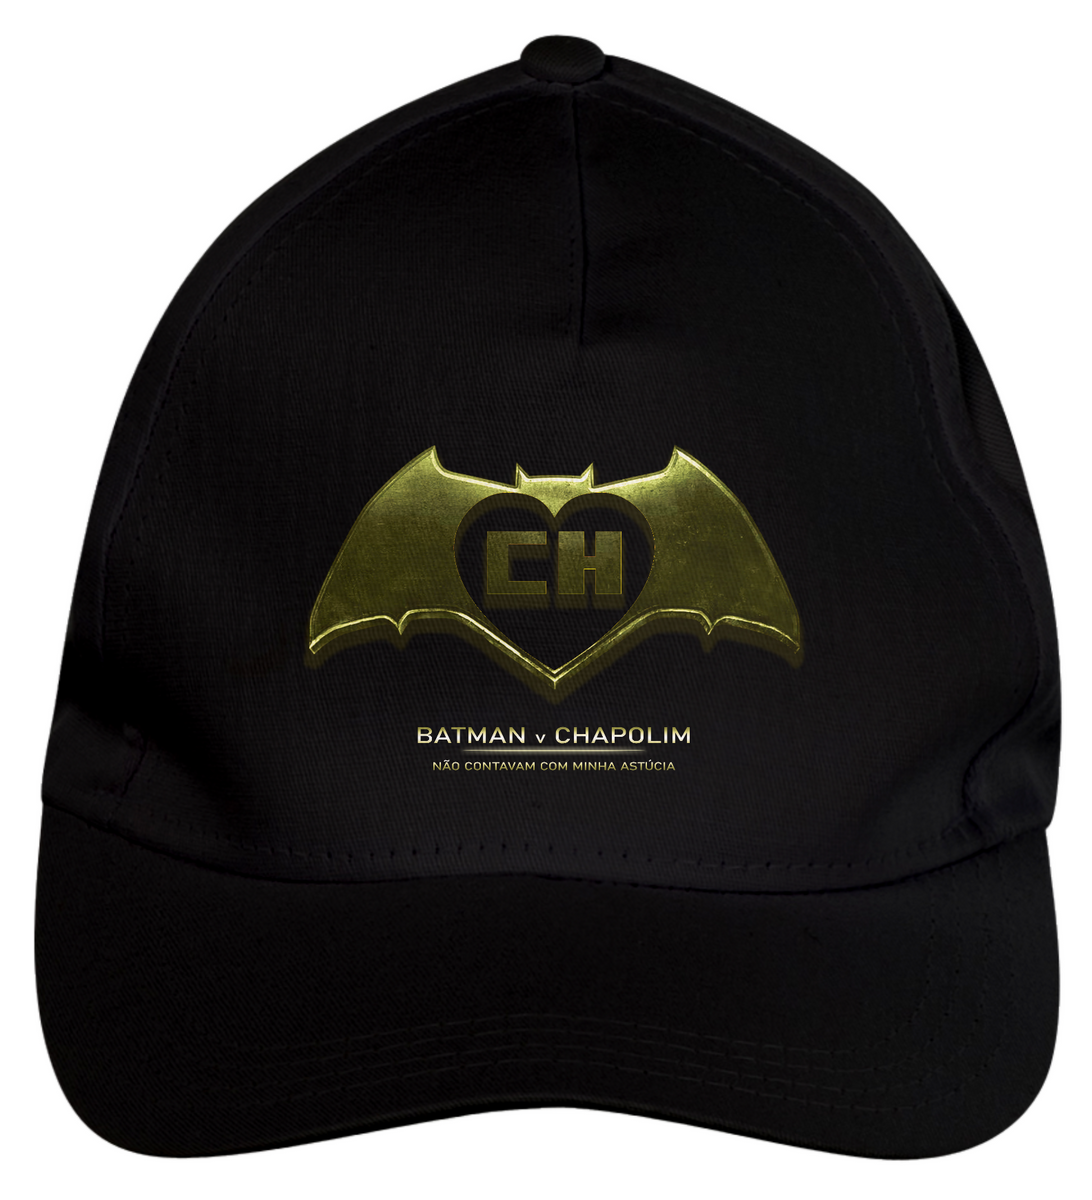 Nome do produto: Boné Batman v Chapolim